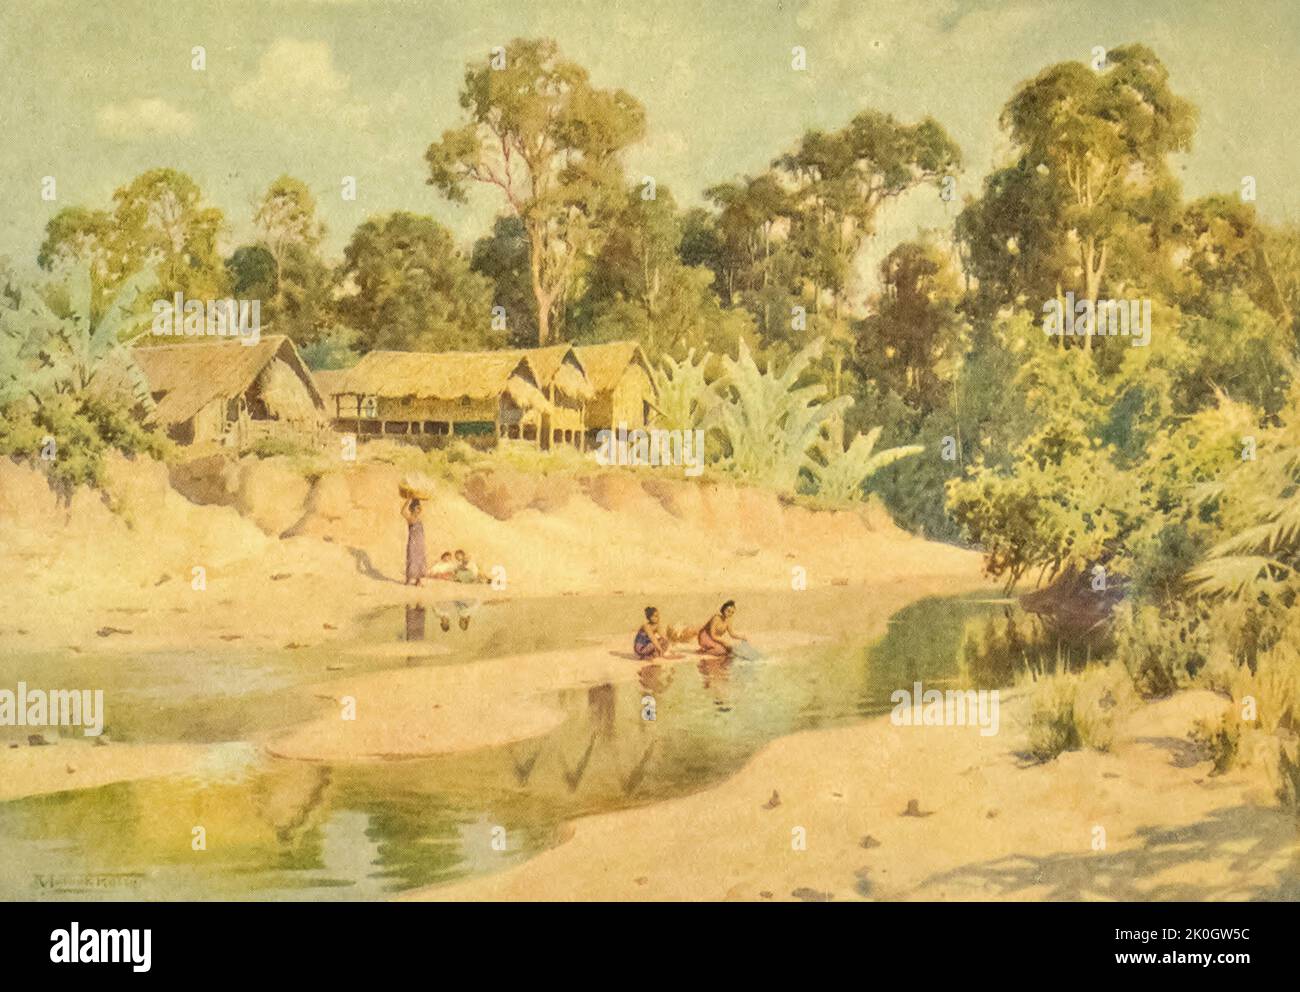 Il Villaggio di min-byin dal libro ' Burma ' dipinto e descritto da Kelly, R. Talbot (Robert Talbot), 1861-1934 Data di pubblicazione 1905 Editore Londra : Adam e Charles Black Foto Stock